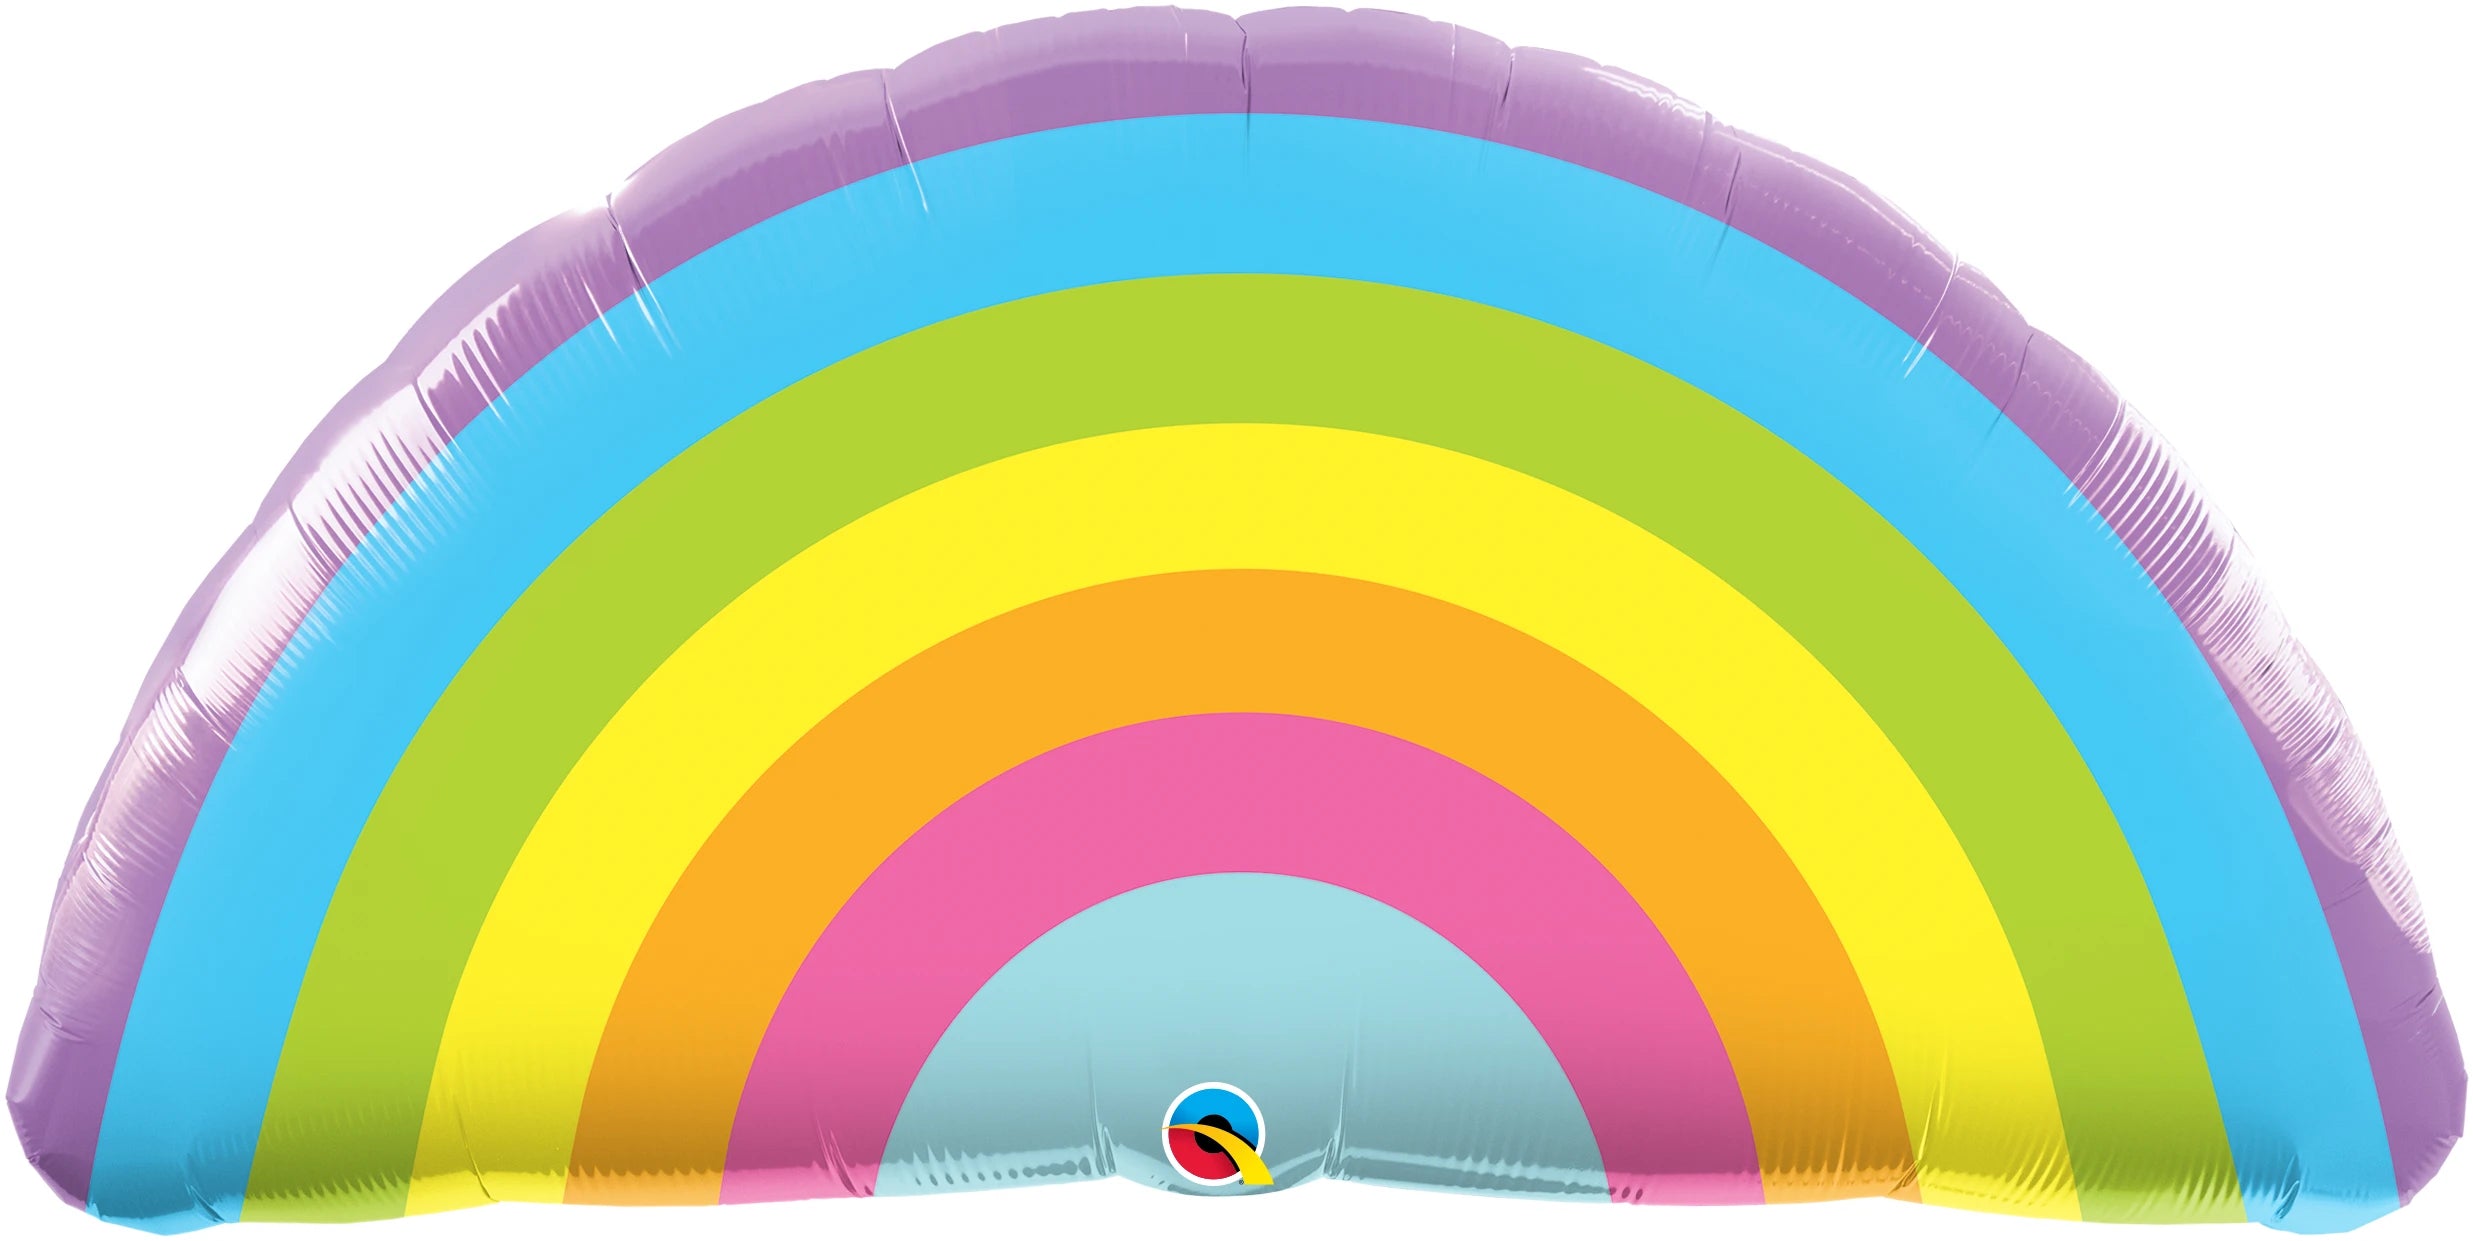 Rainbow shape balloons